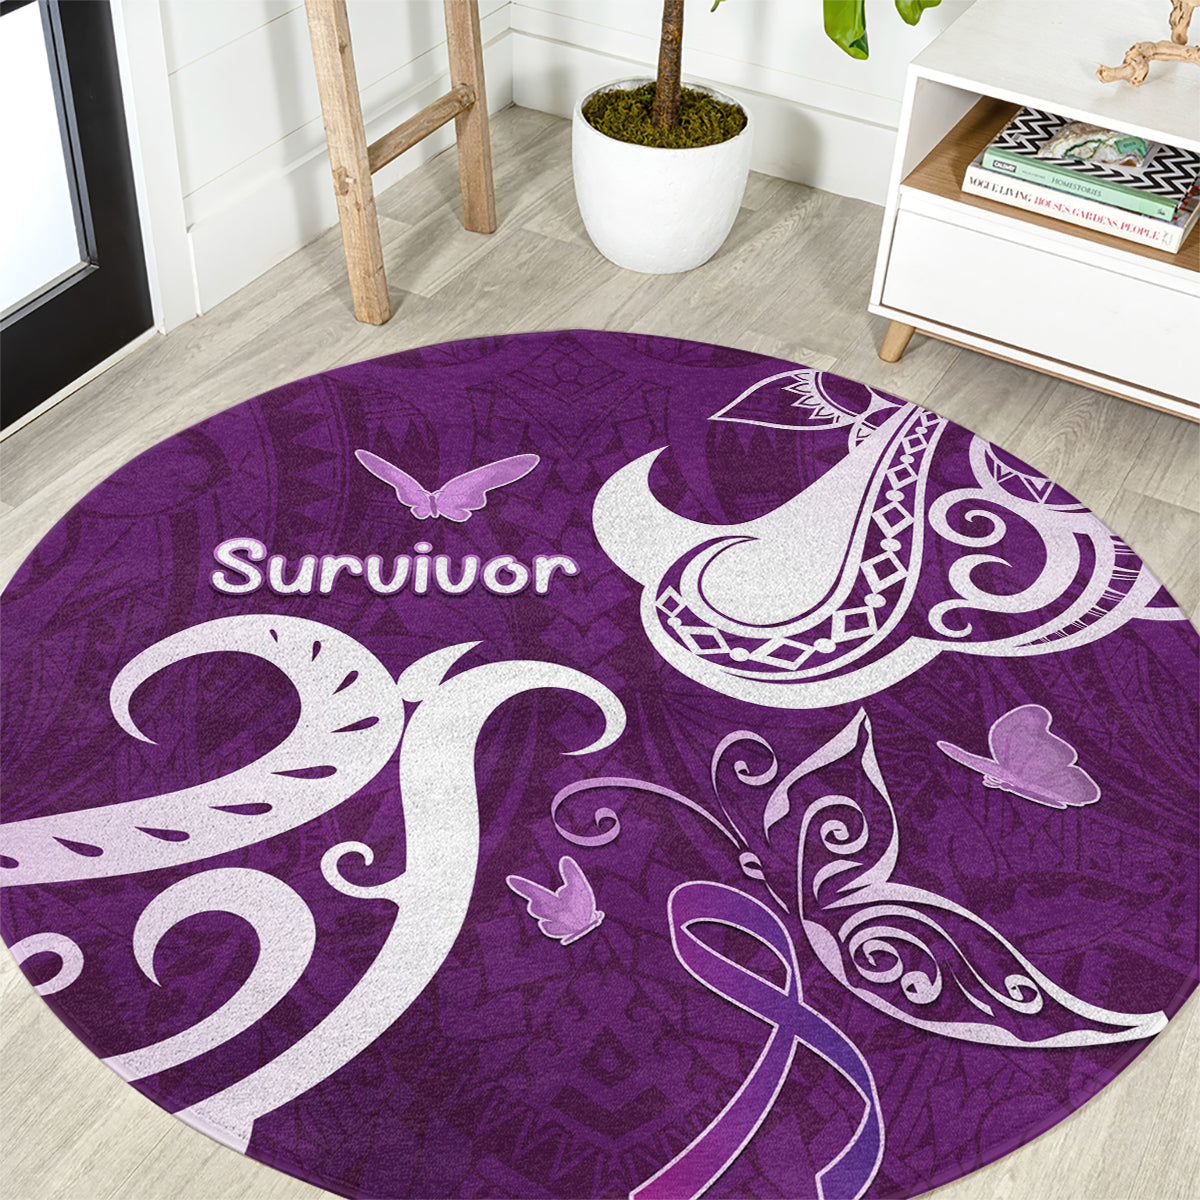 Fibromyalgia Awareness Round Carpet Polynesian Purple Ribbon